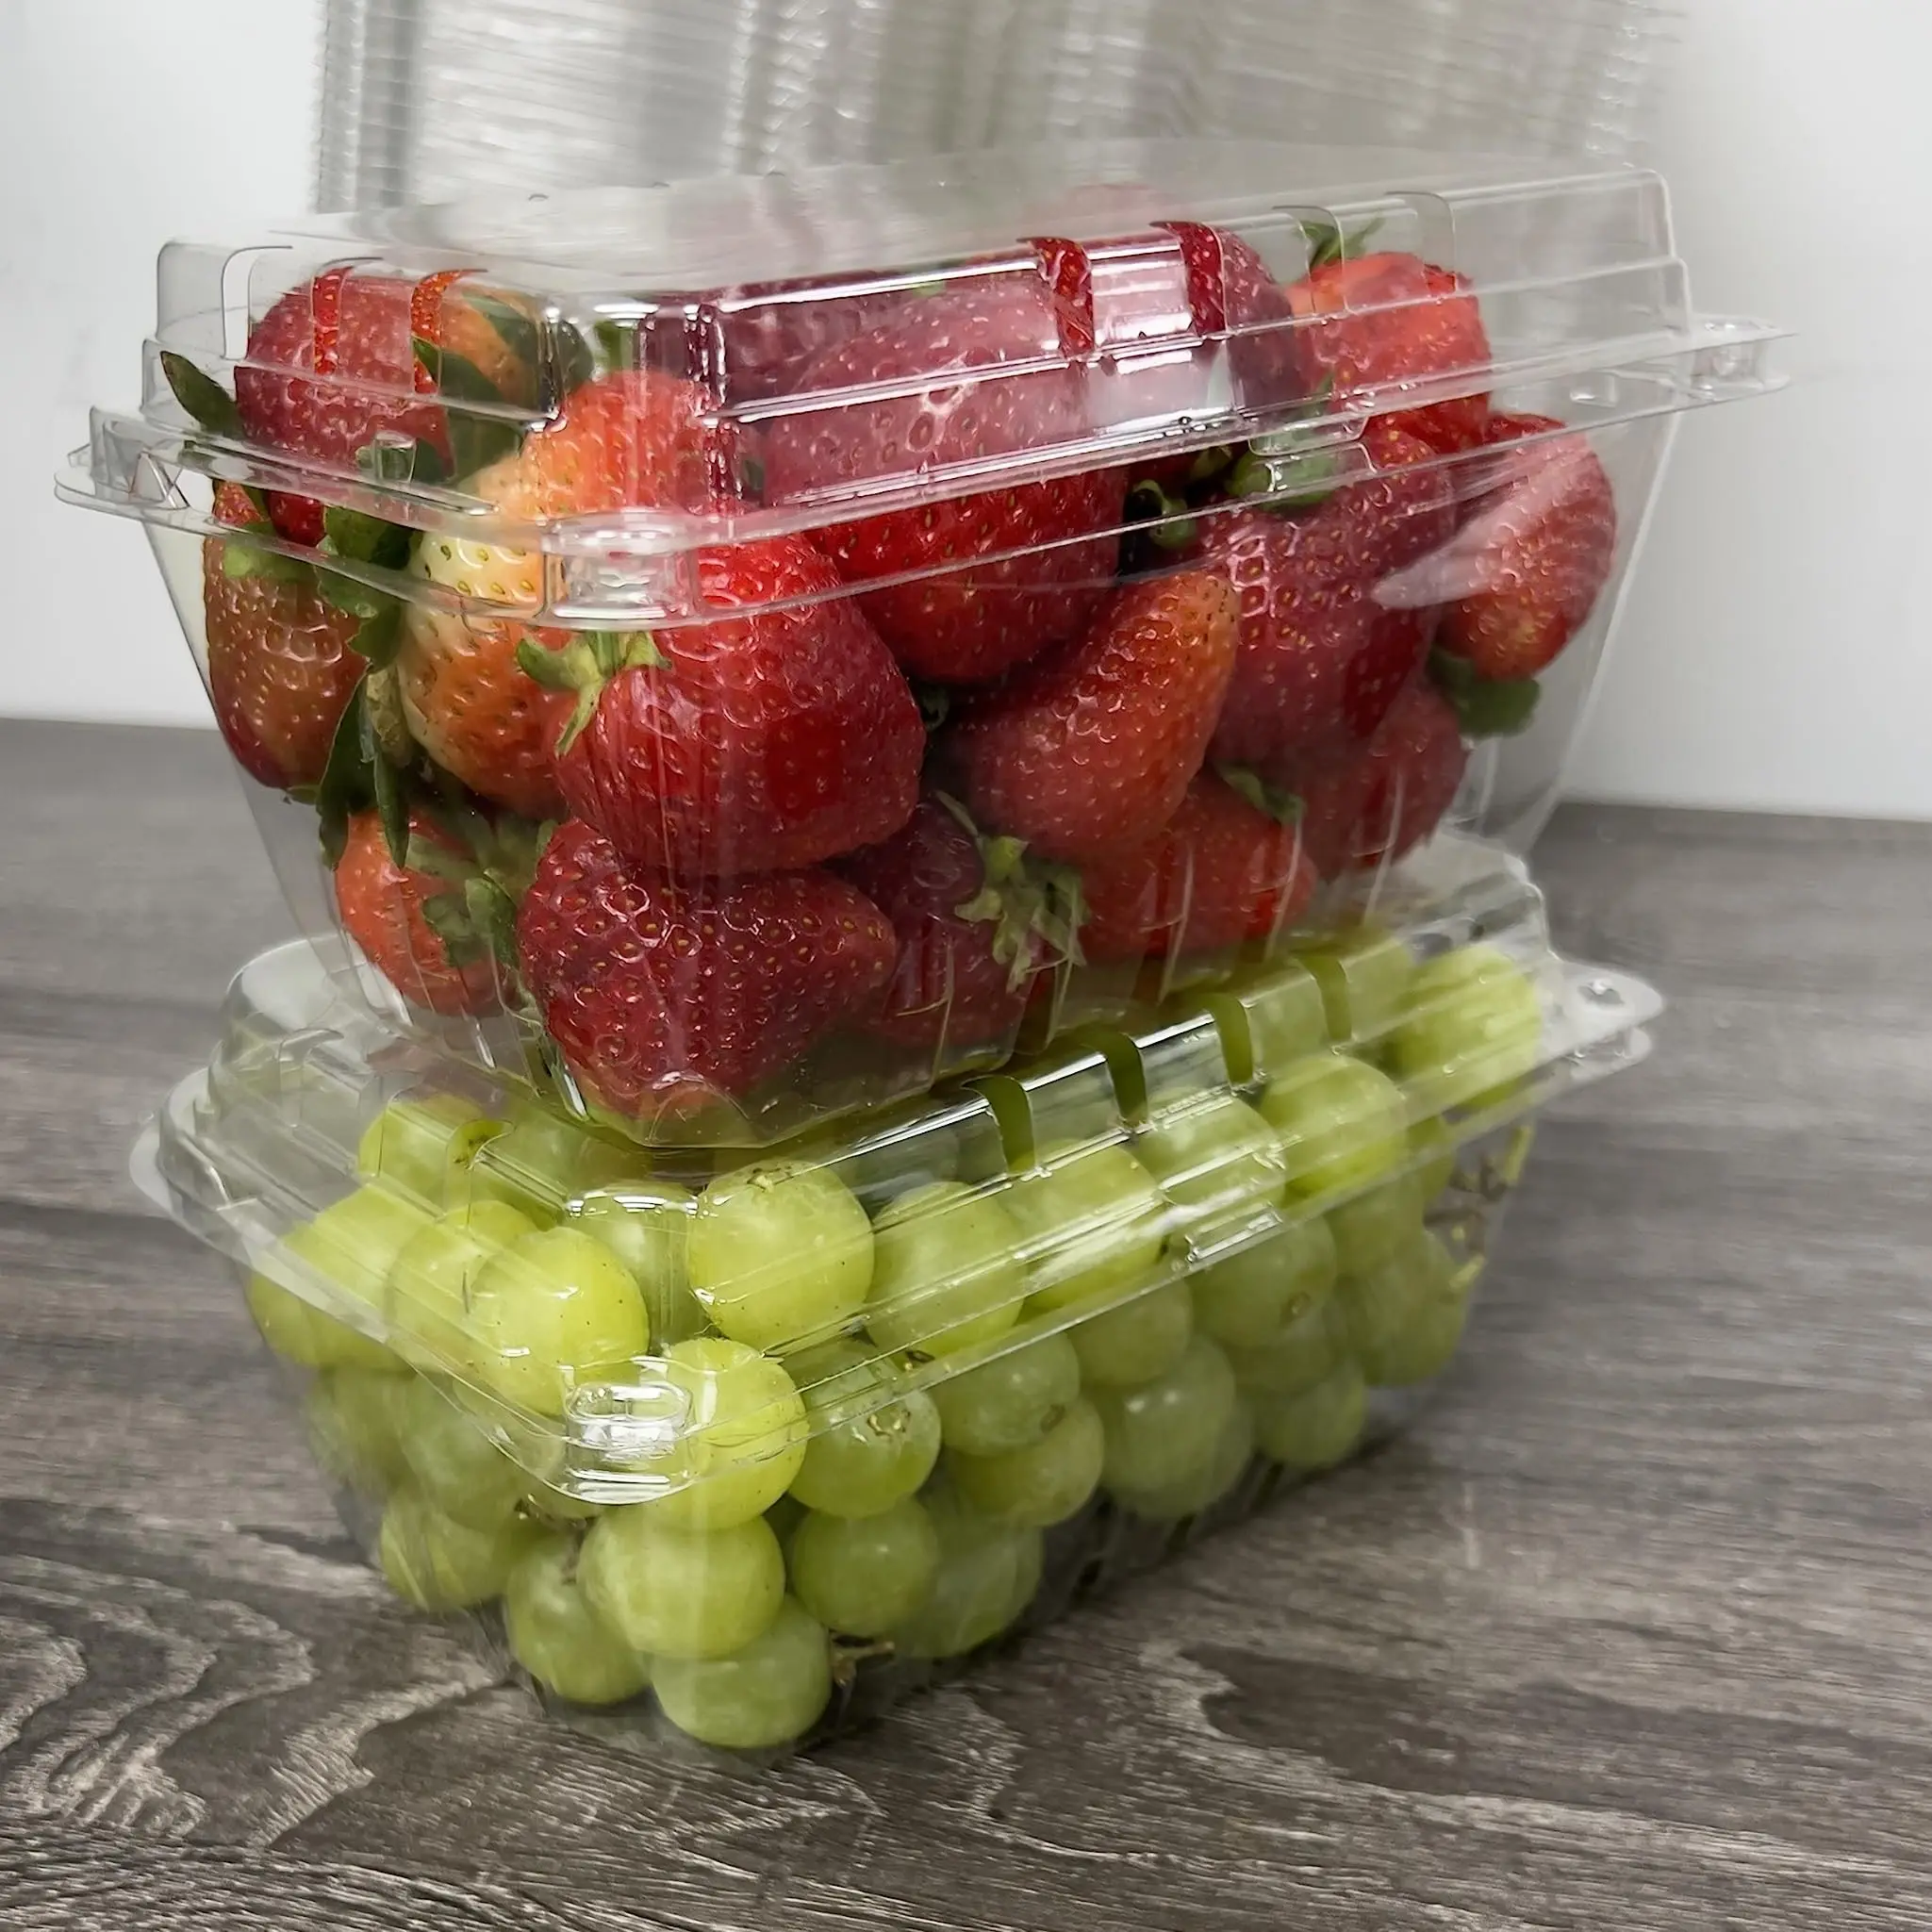 1LB Obst Chlam shell Verpackung Klar PET Kunststoff Box Früchte Tomaten Traube Erdbeer Punnet Behälter für frische Bauernhöfe